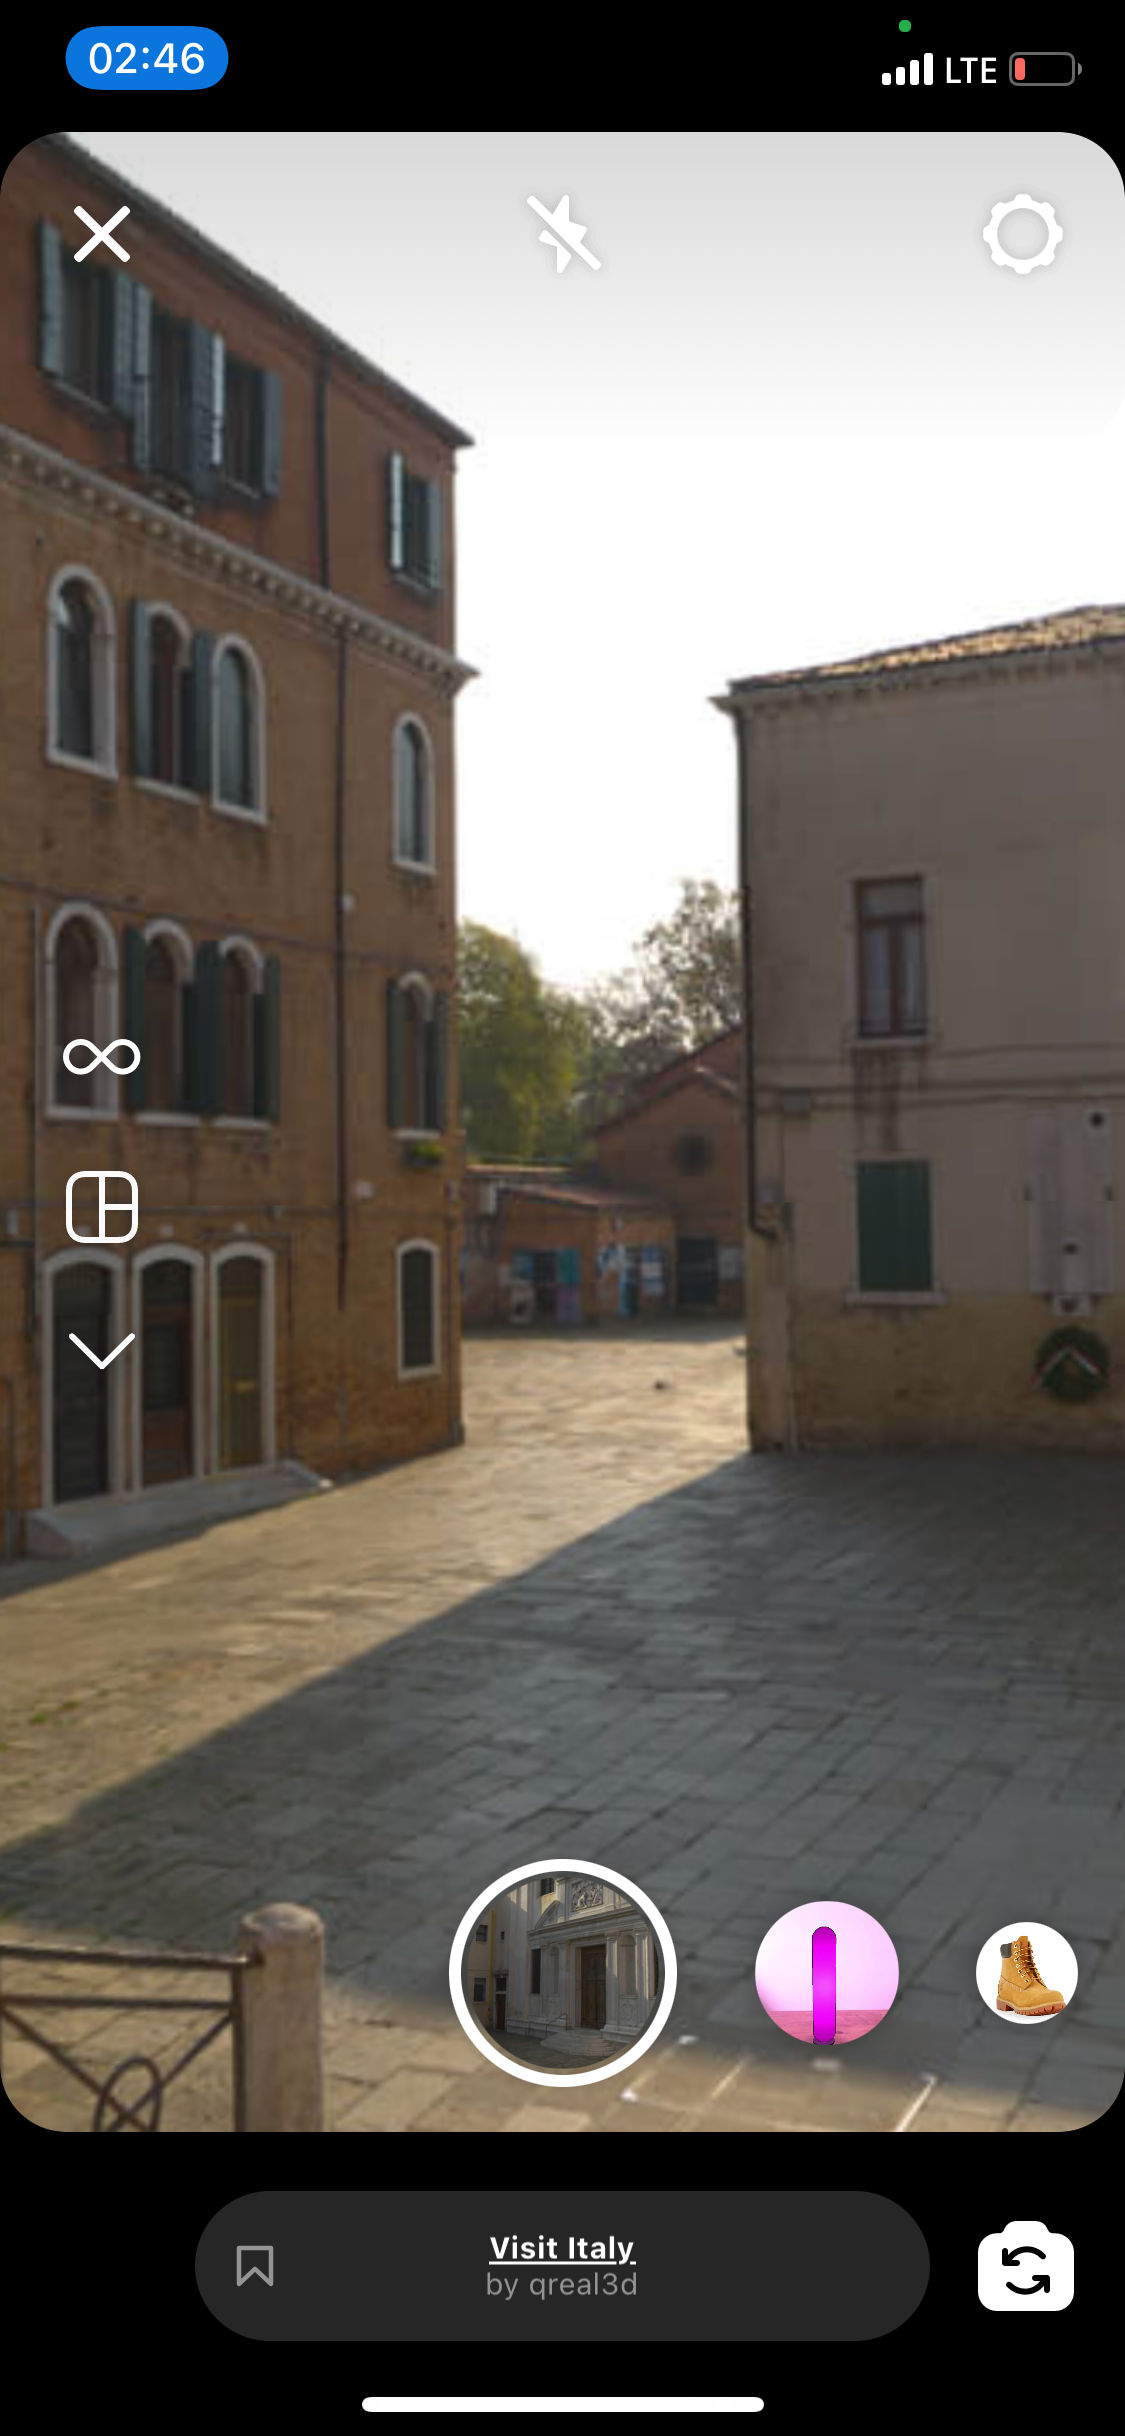 Instagram AR Filter Visit Italy 